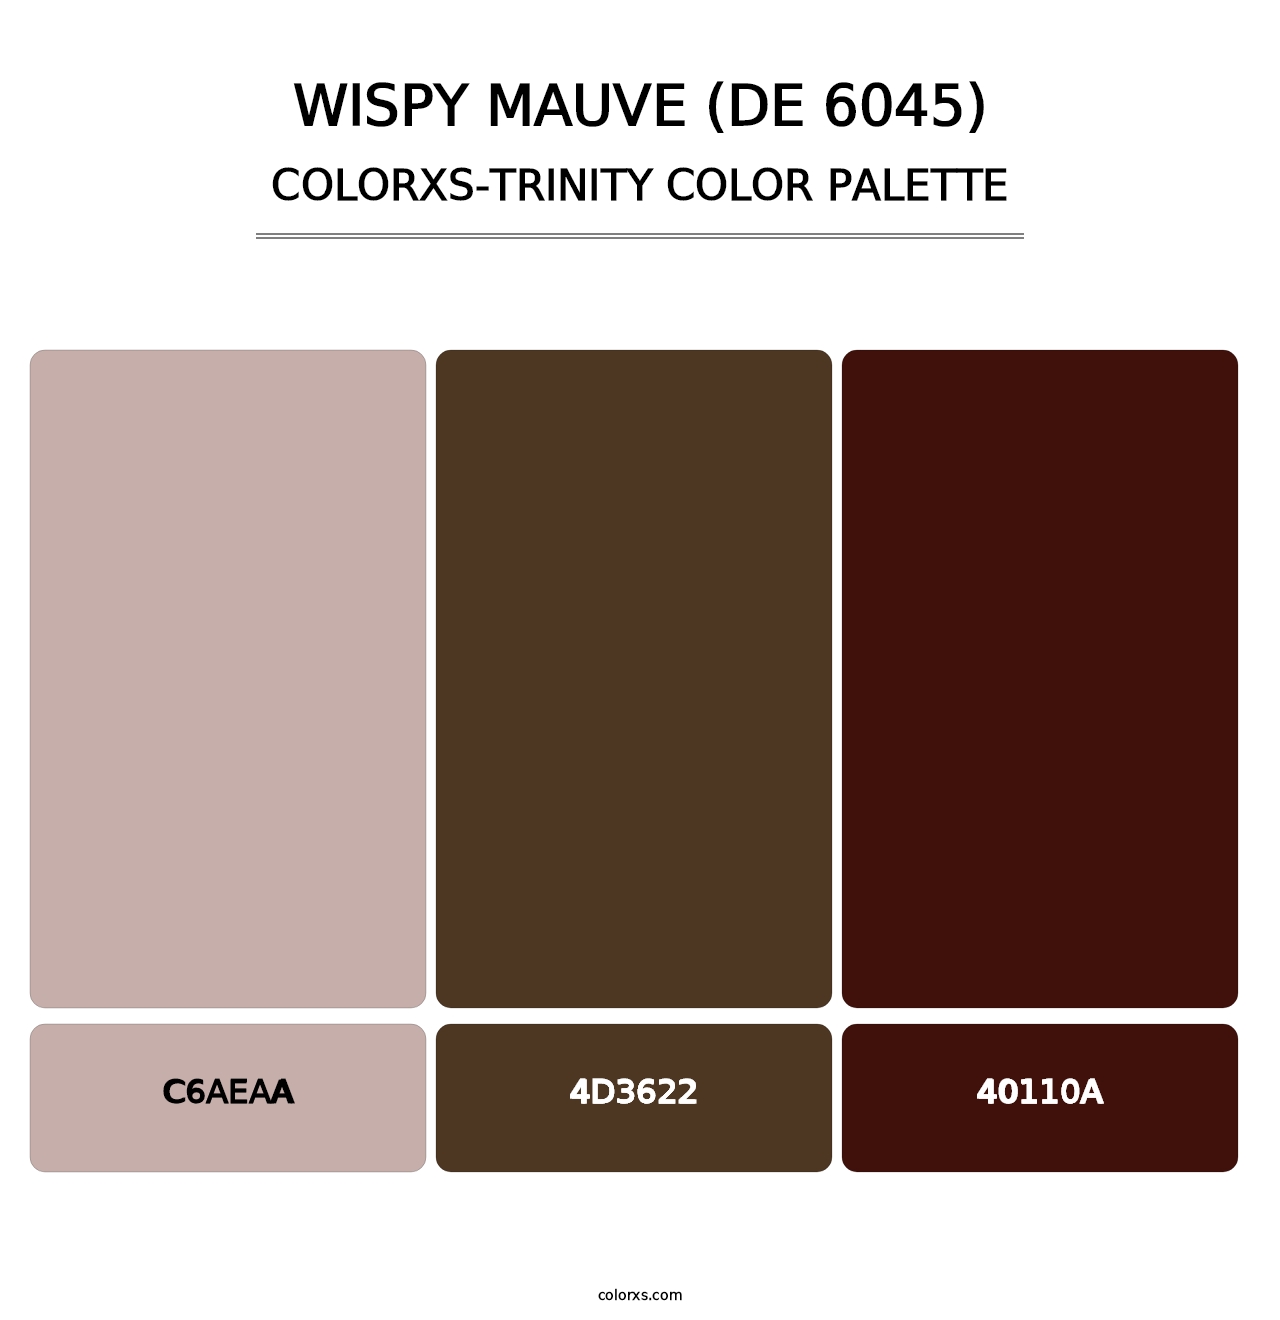 Wispy Mauve (DE 6045) - Colorxs Trinity Palette